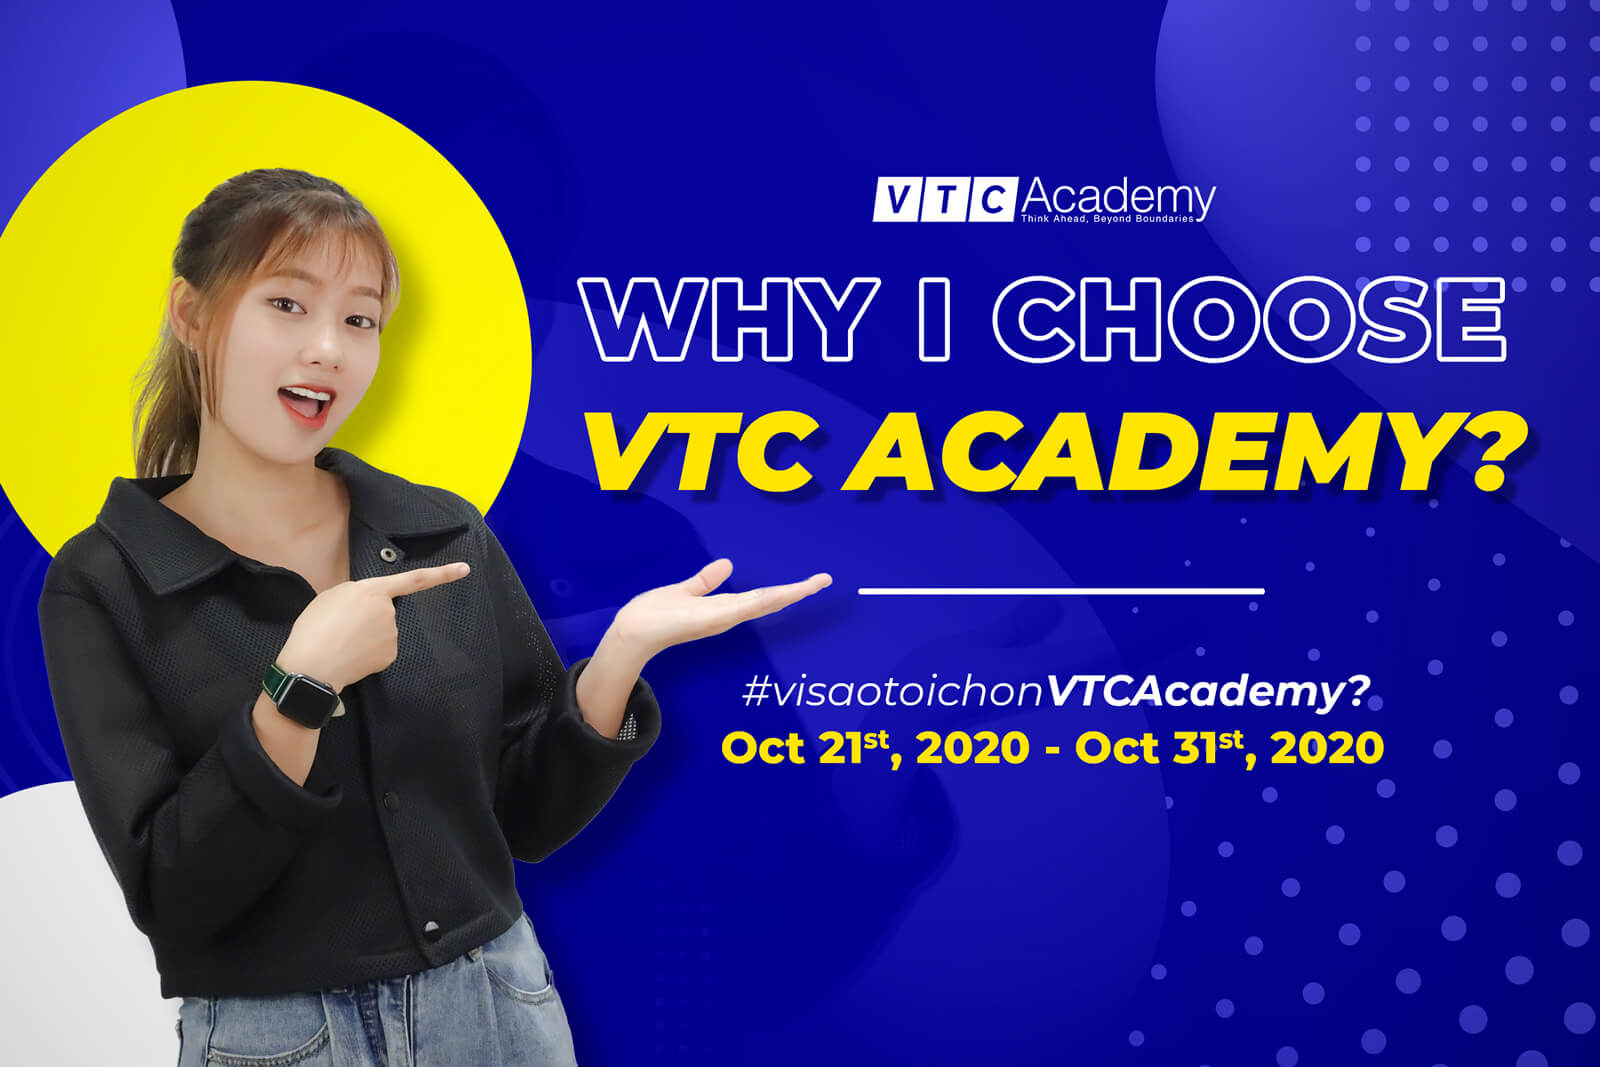 VTCアカデミーを選ぶ理由はなぜだろうと考えたことはありますか